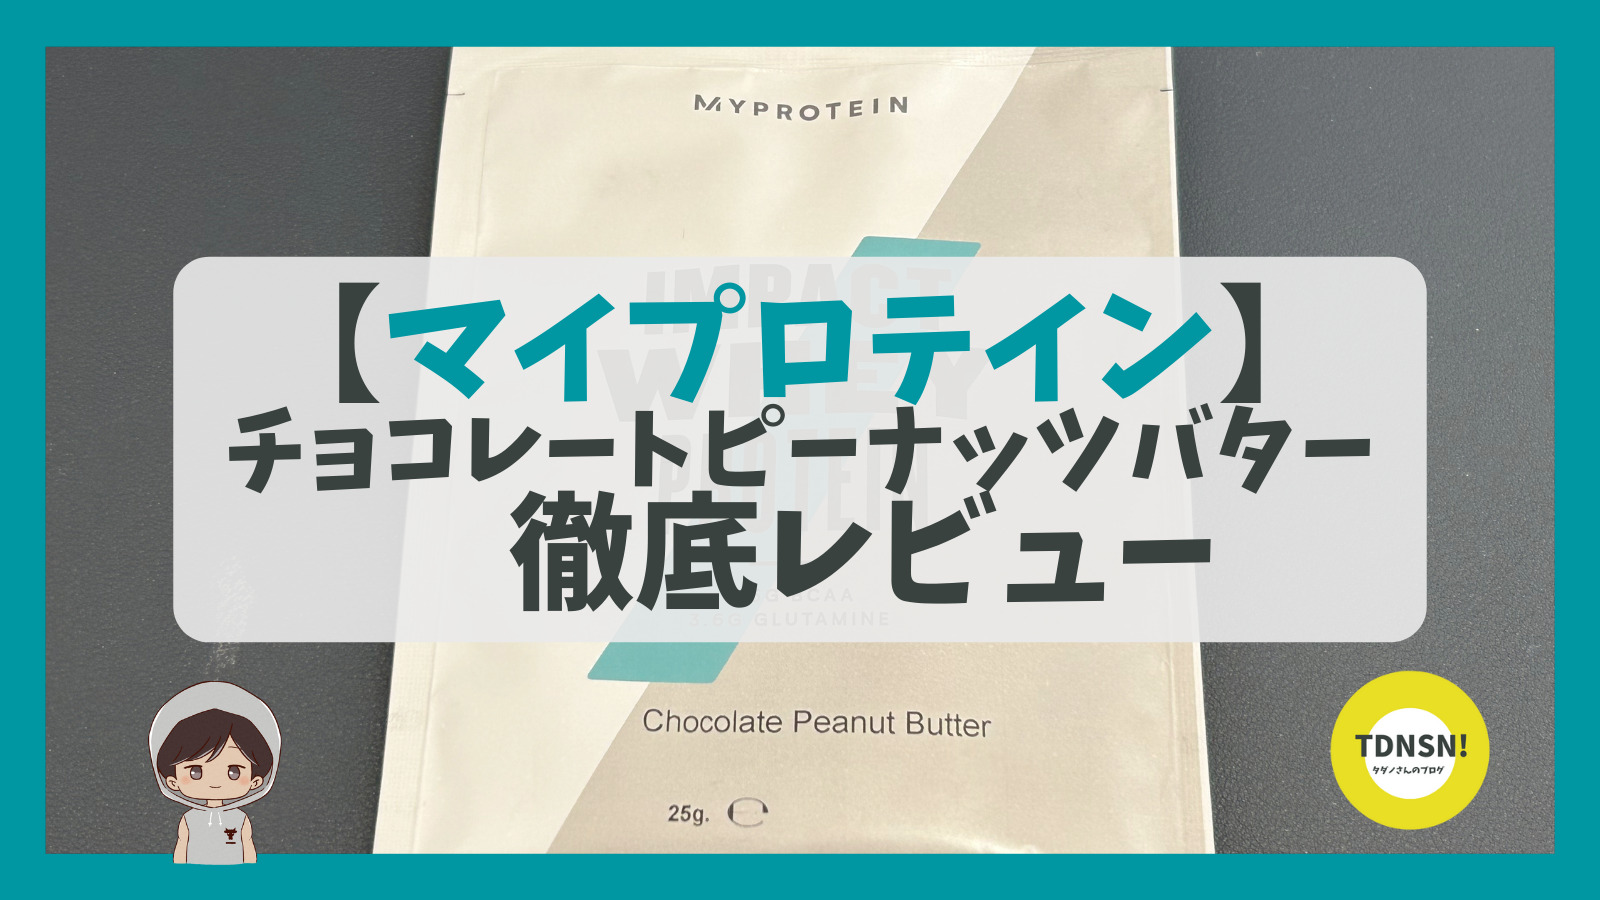 マイプロテイン【チョコレートピーナッツバター】ってどんな味 ...